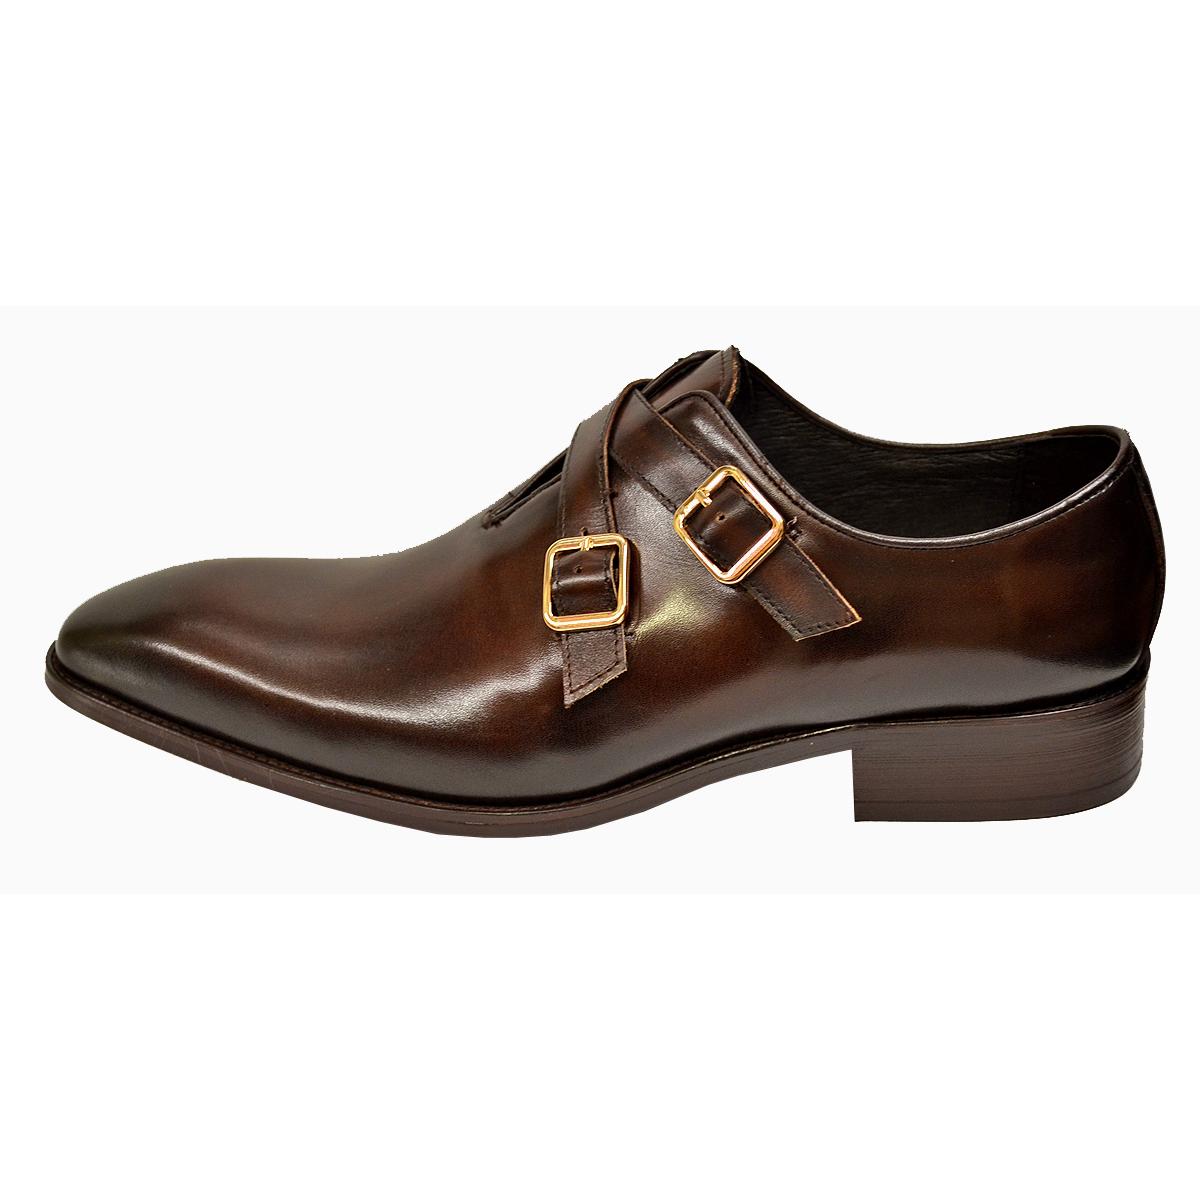 Men's Dress Leather Shoes Carrucci Apron Toe Double Monk Brown/Navy 